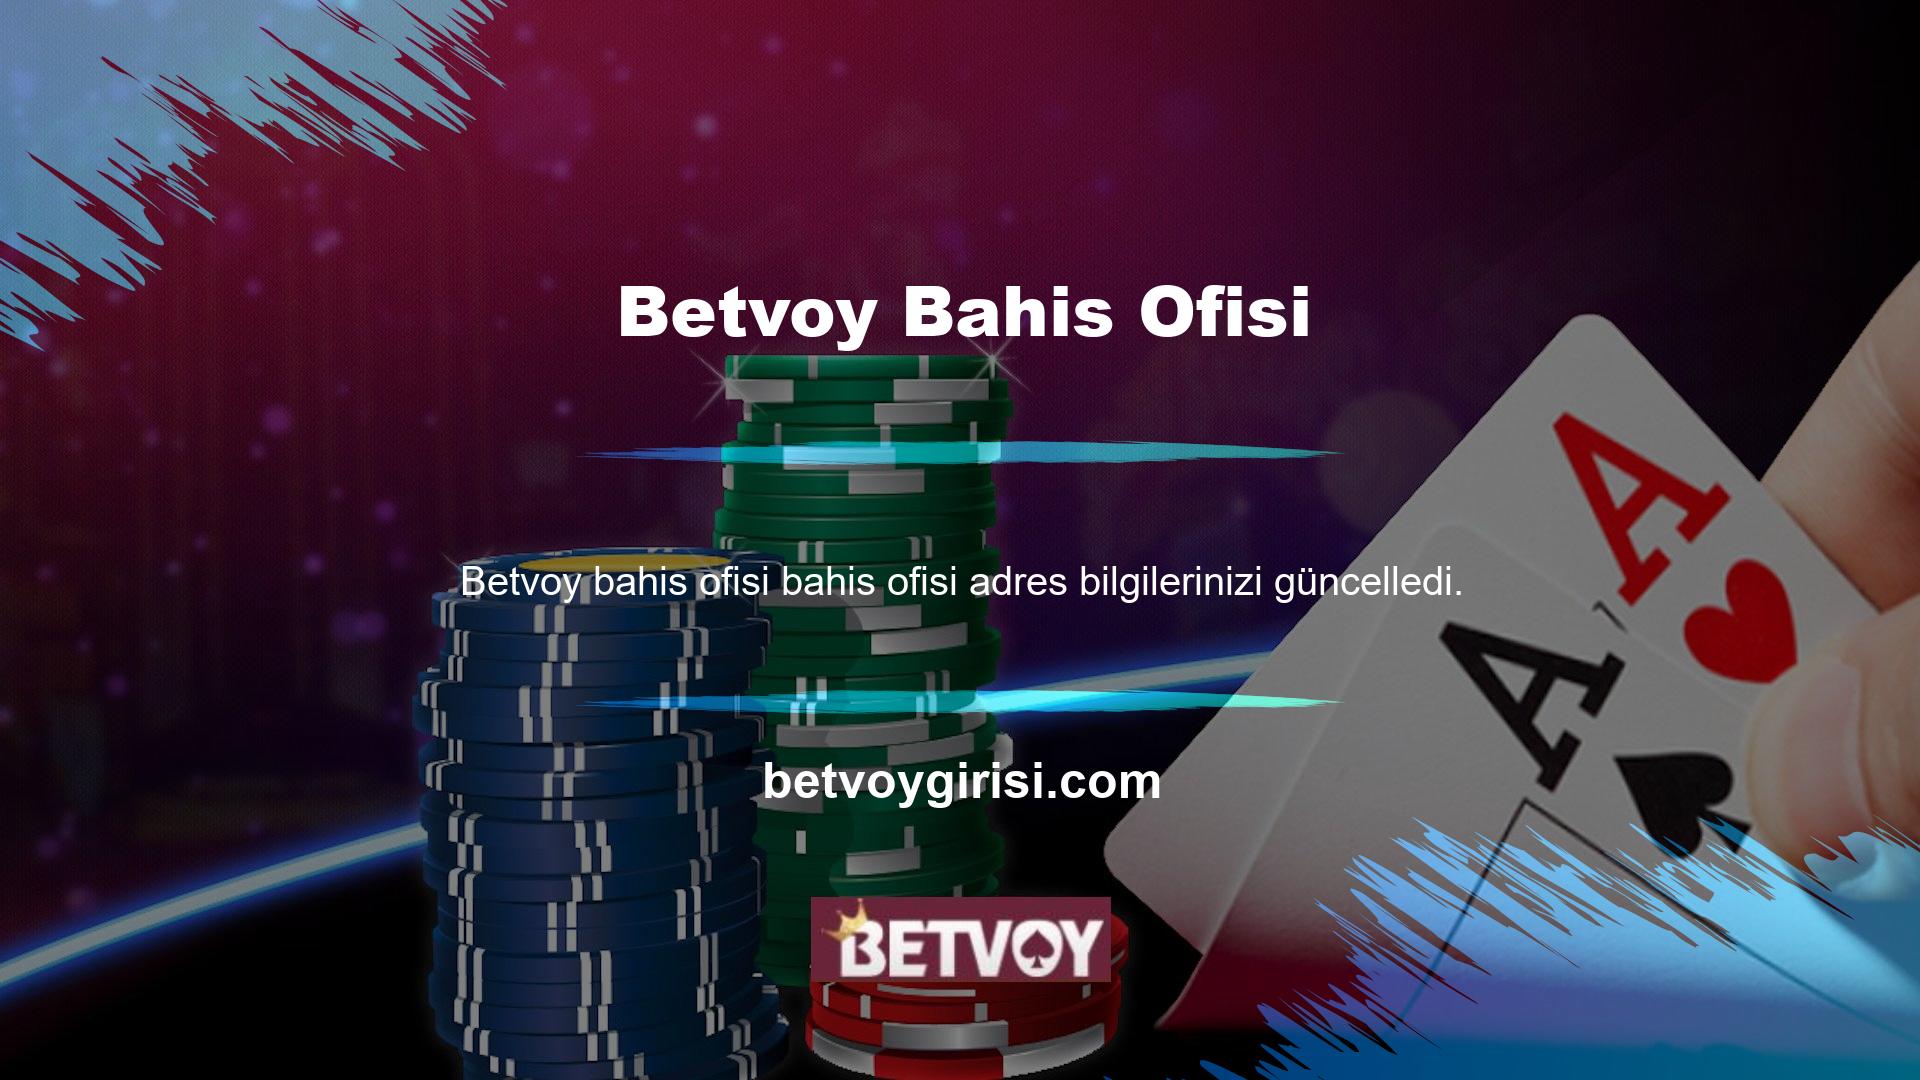 Uzun zamandır bahis dünyasında, Betvoy web sitesi önce siteye giriş yapmanızı gerektirir